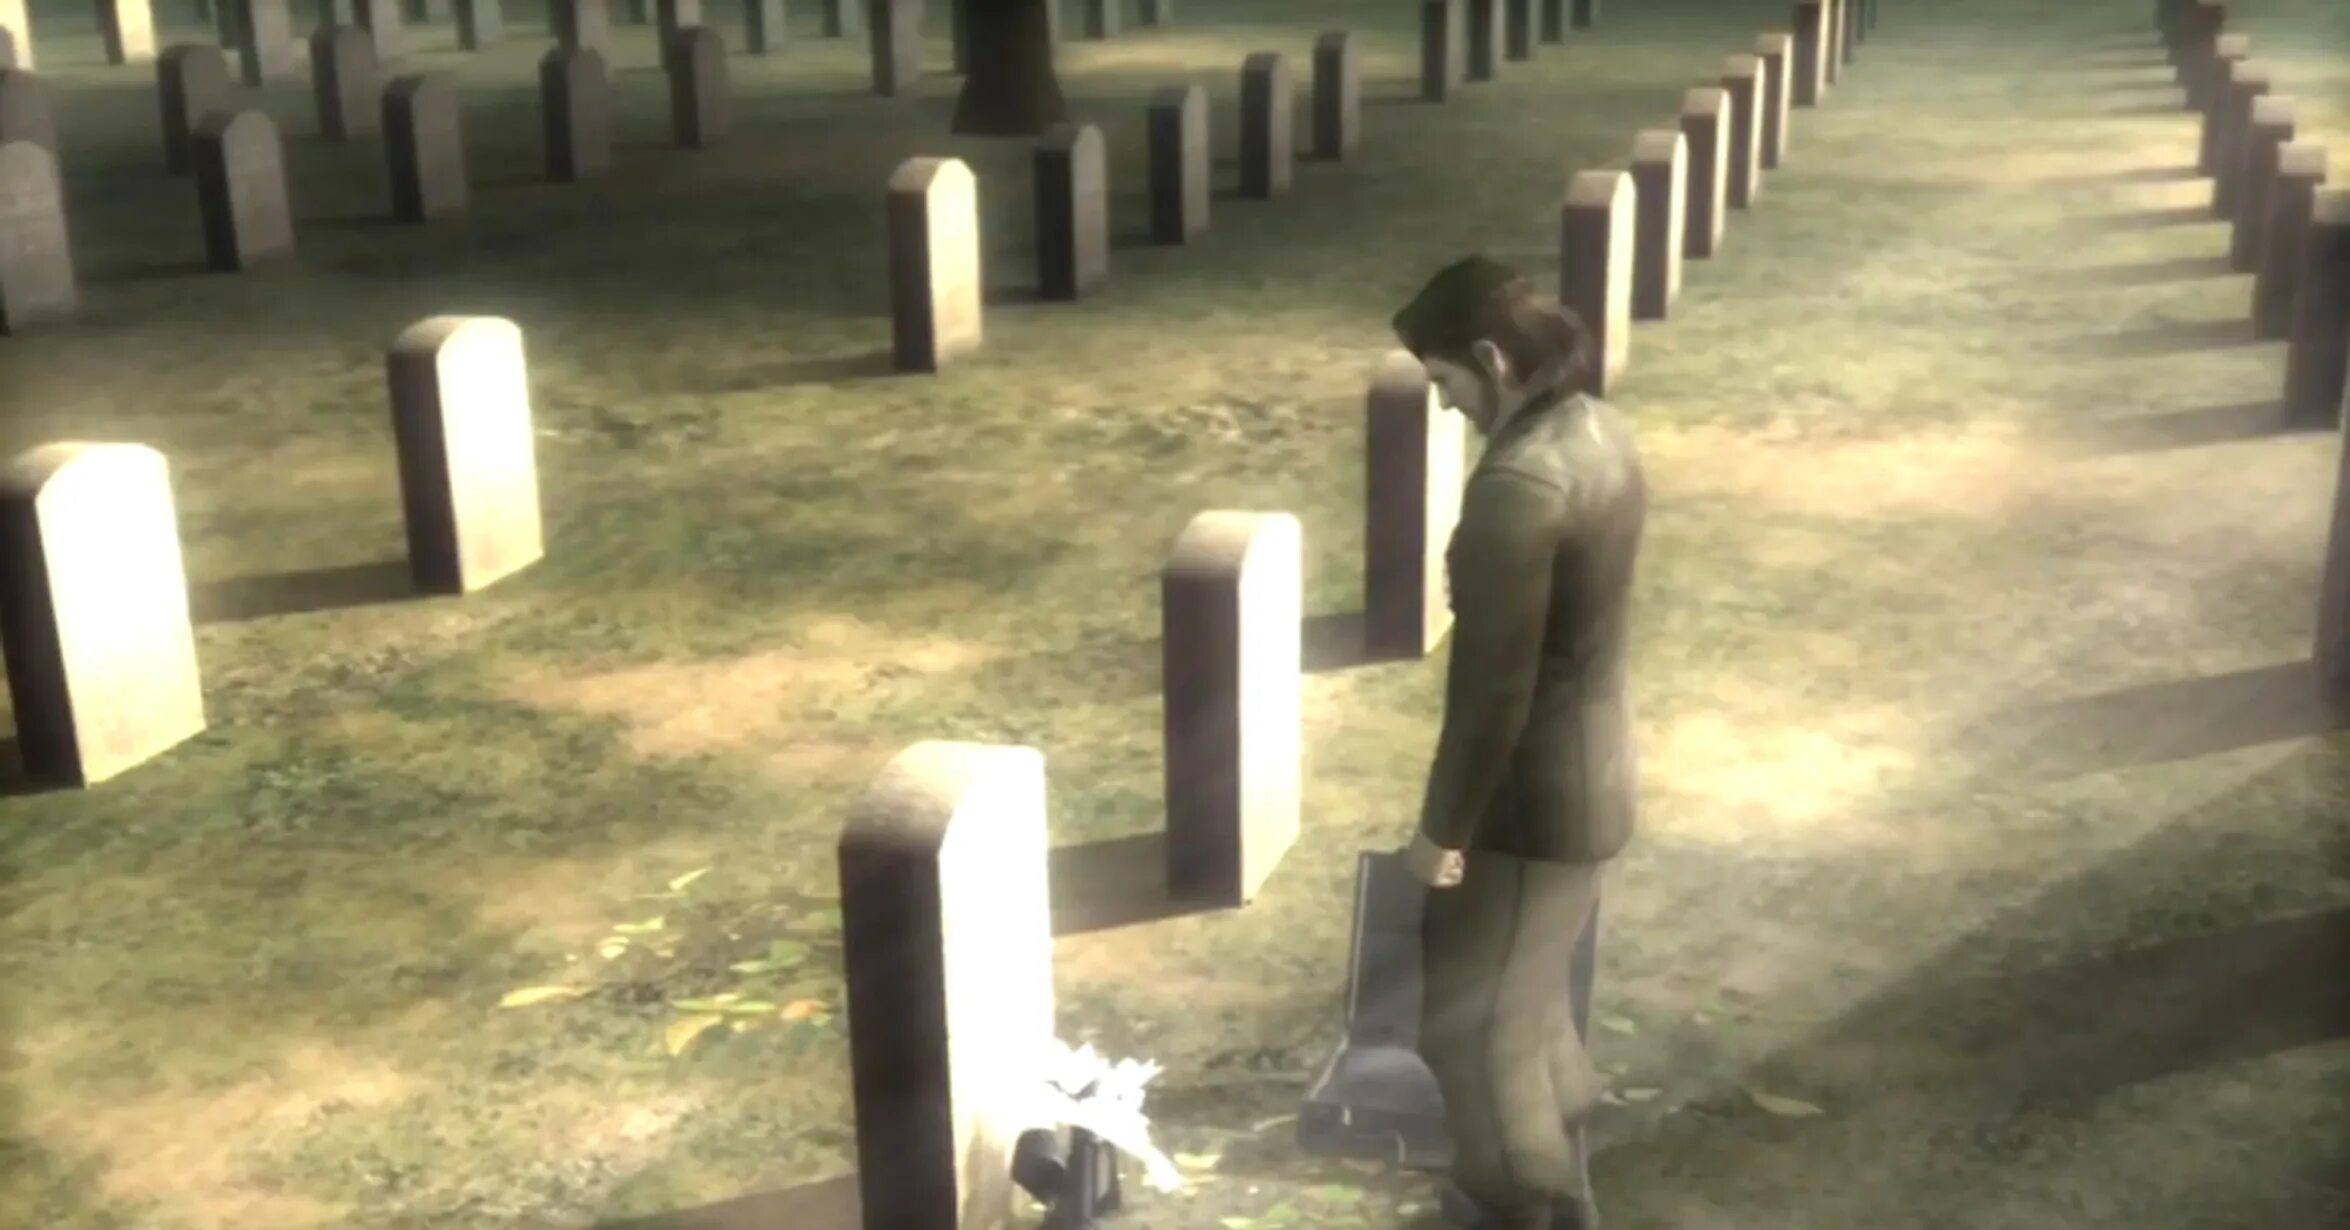 Похороны расула биг босса. Могила босс МГС. Metal Gear Solid 3 кладбище. Биг босс и Солид Снейк на могиле. Metal Gear Solid 4 Grave.